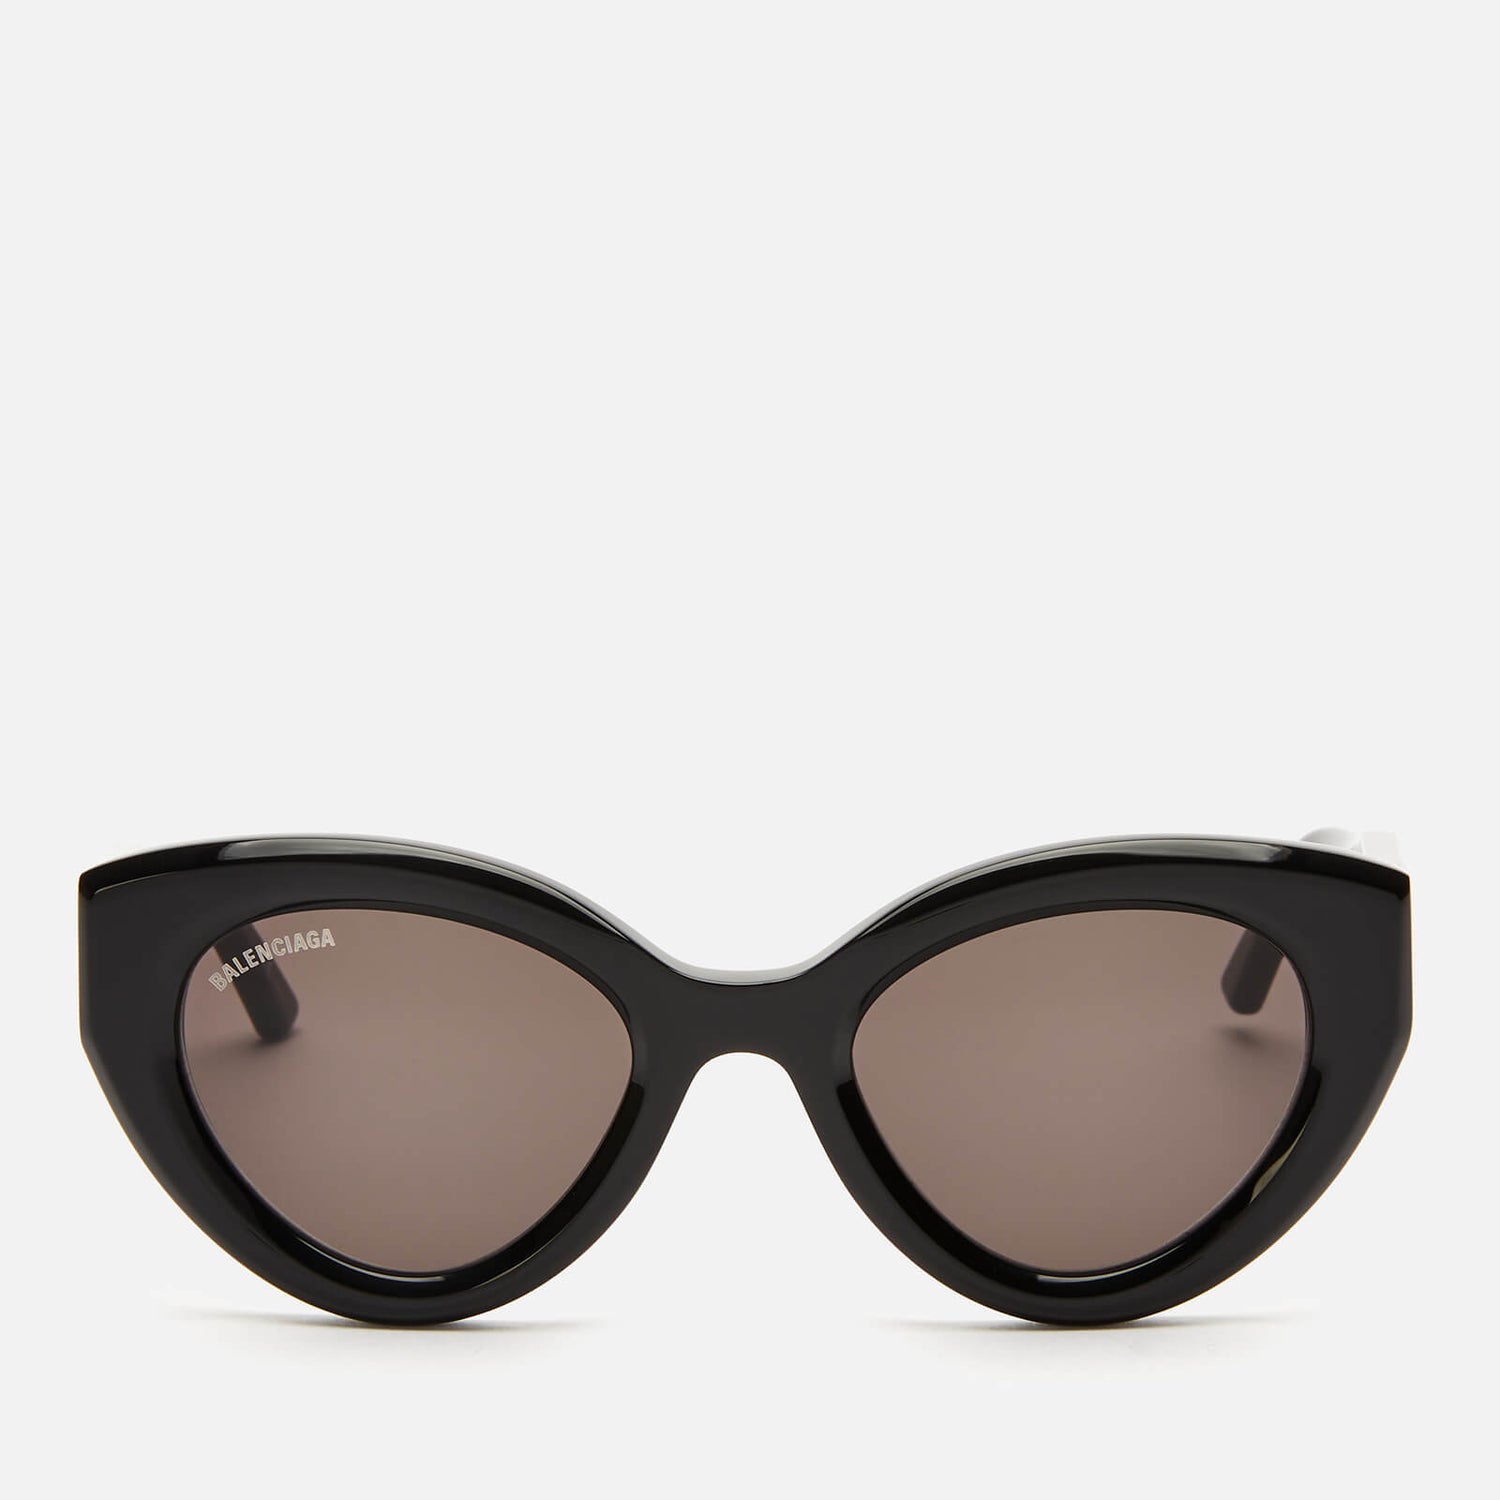 Balenciaga Women's Cat Eye Acetate Sunglasses - Black/Grey